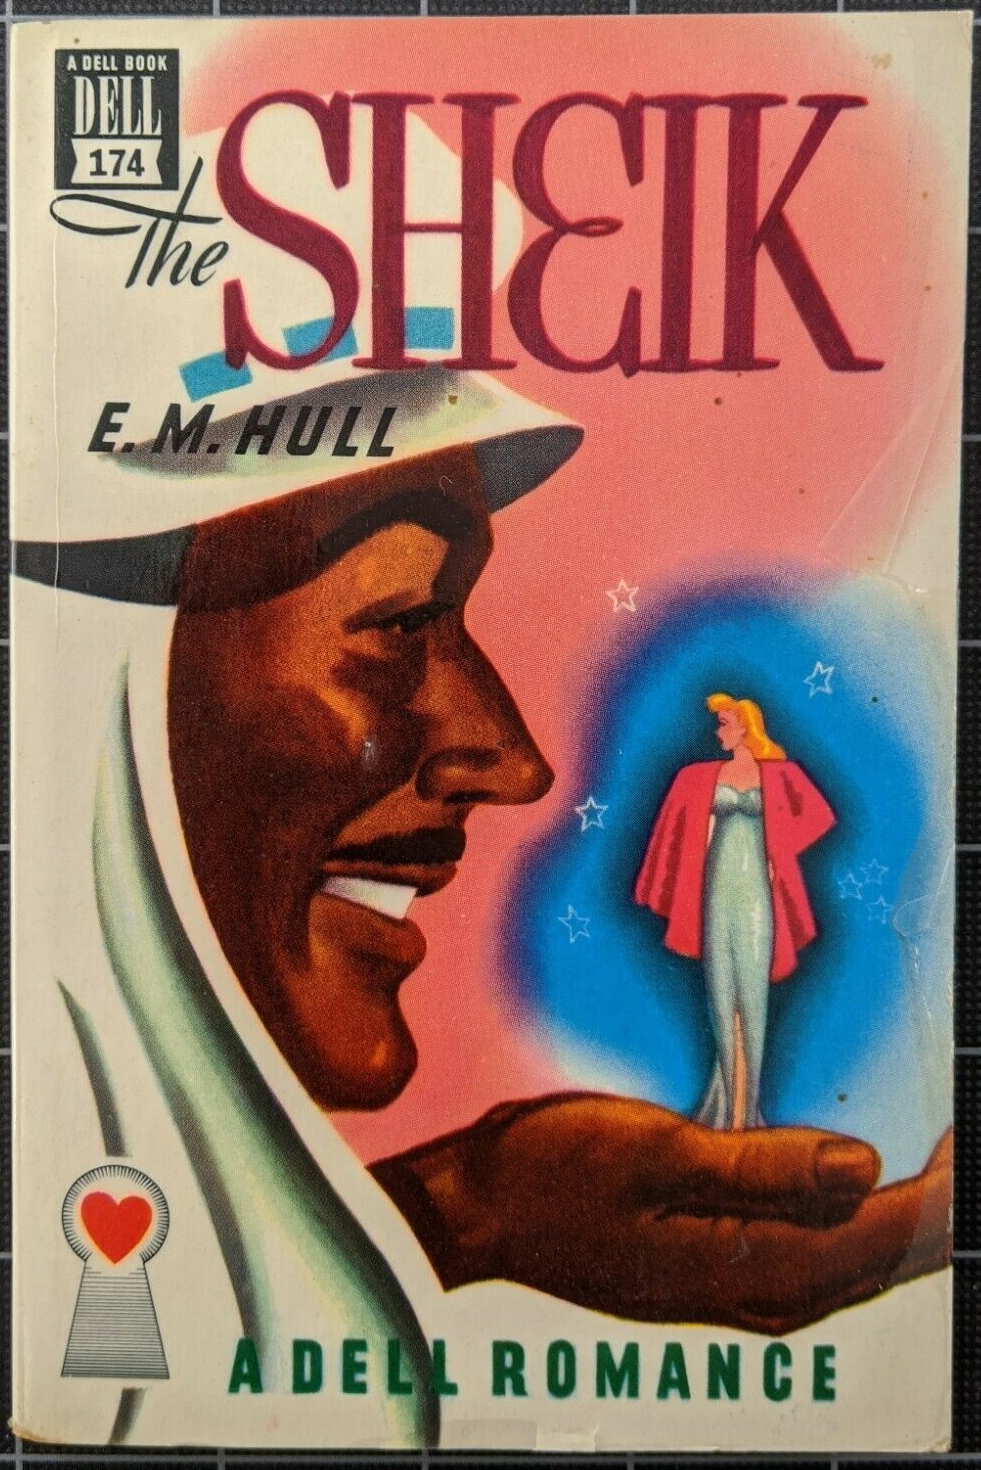 The Sheik - 1921